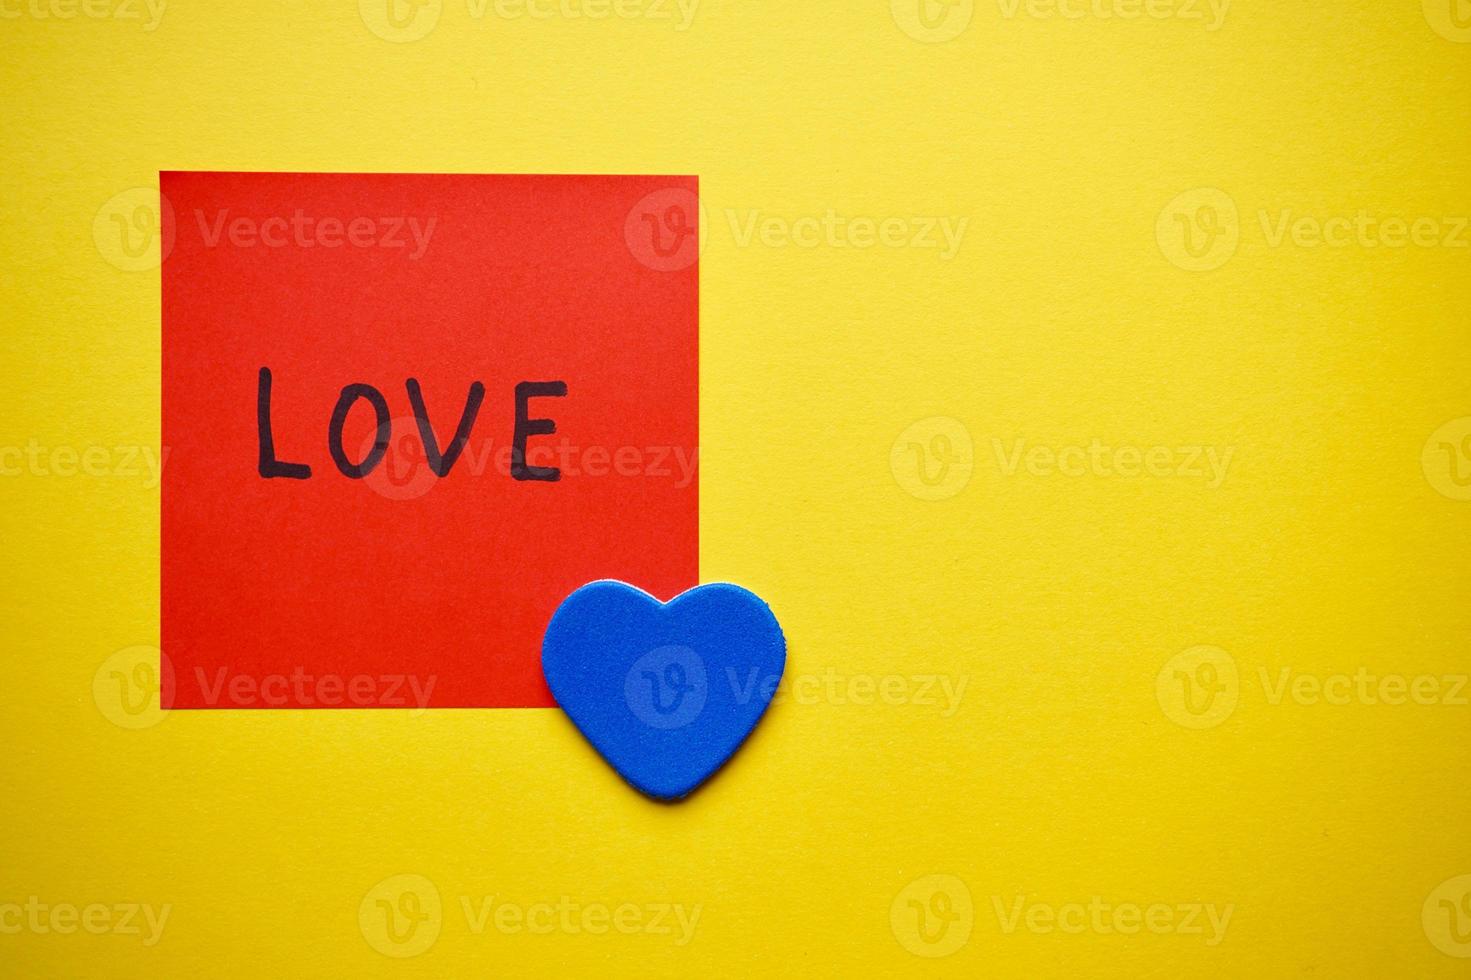 Liebesbotschaft geschrieben auf einem Papier zum Valentinstag foto